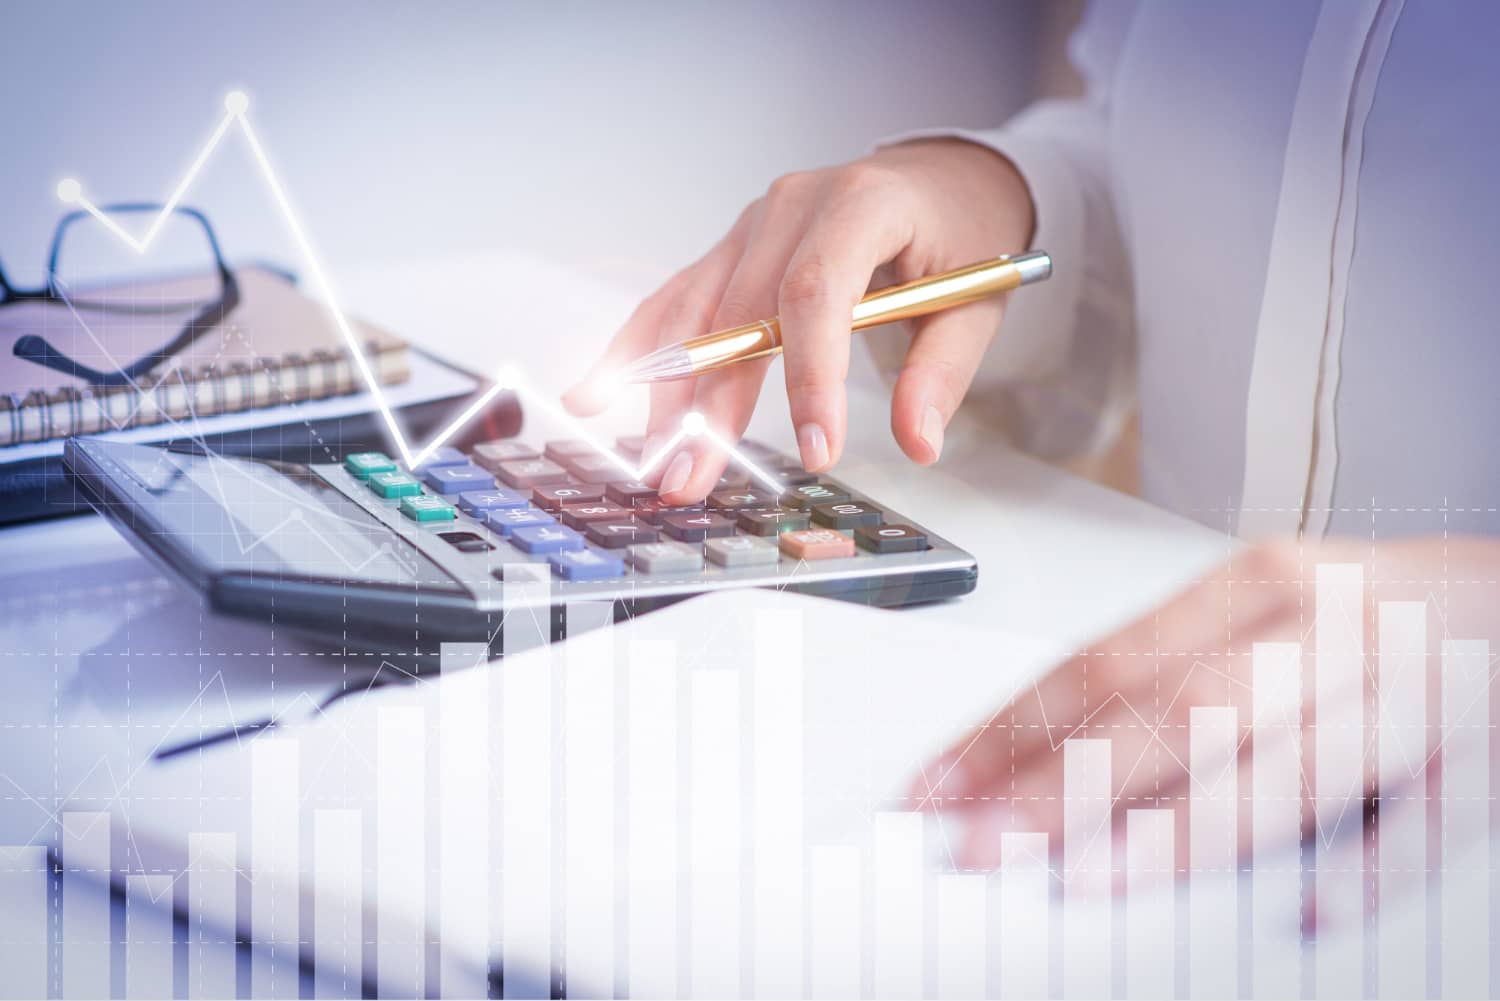 Imagem representando Fundos de Renda Fixa, mostrando uma pessoa fazendo cálculos e análises em meio a gráficos financeiros